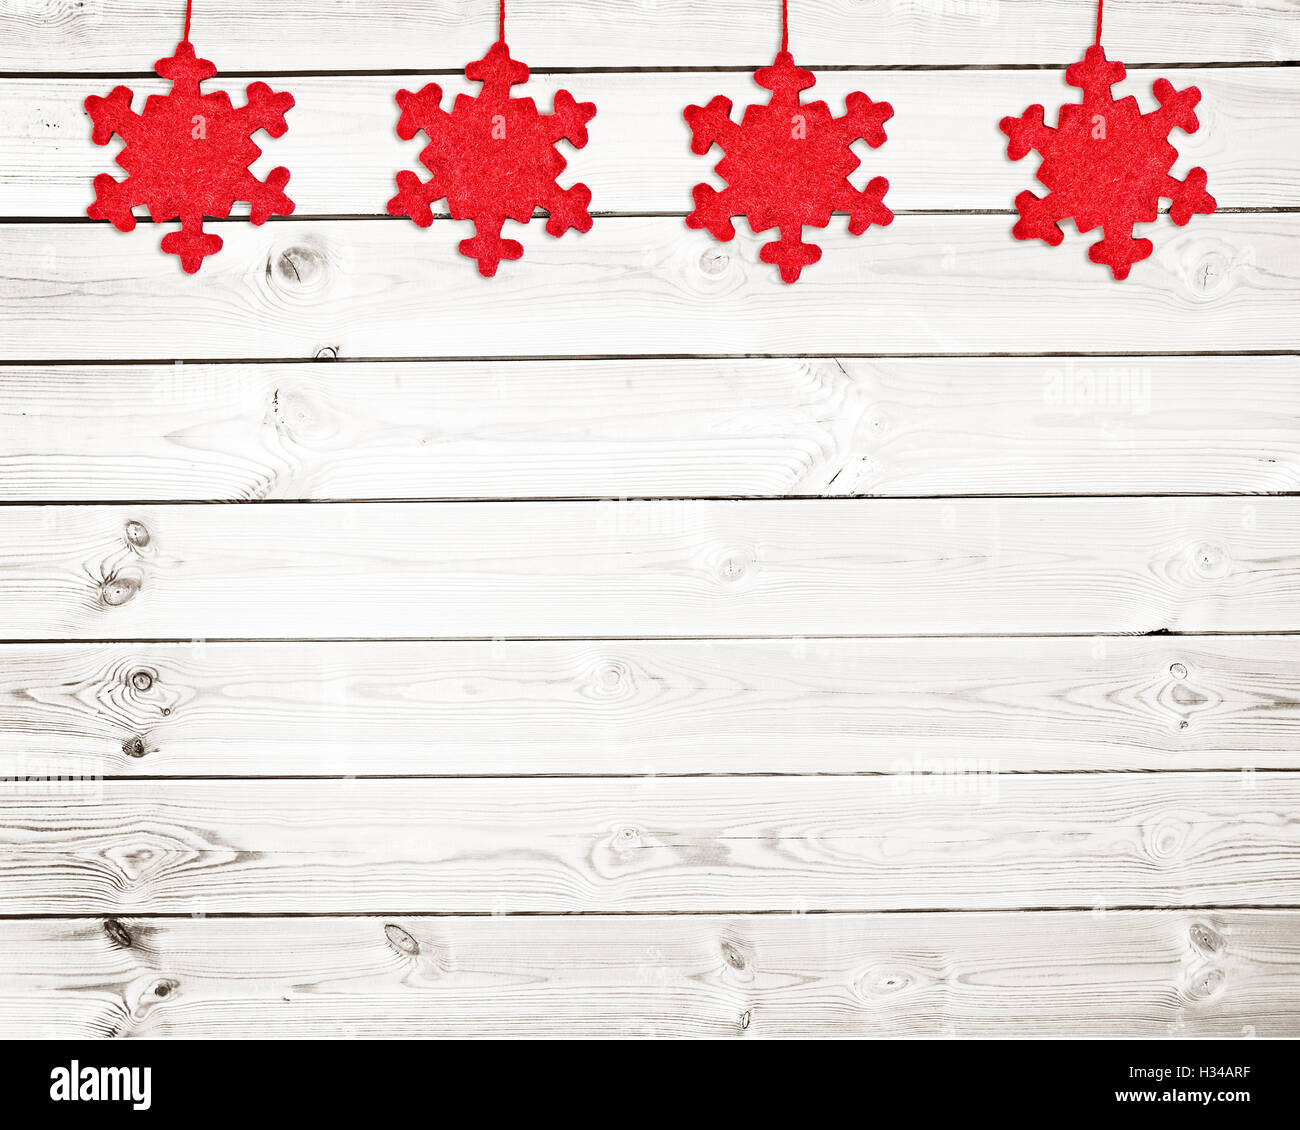 Roter Stoff Weihnachtsschmuck auf weißen Holzbohlen Hintergrund Stockfoto